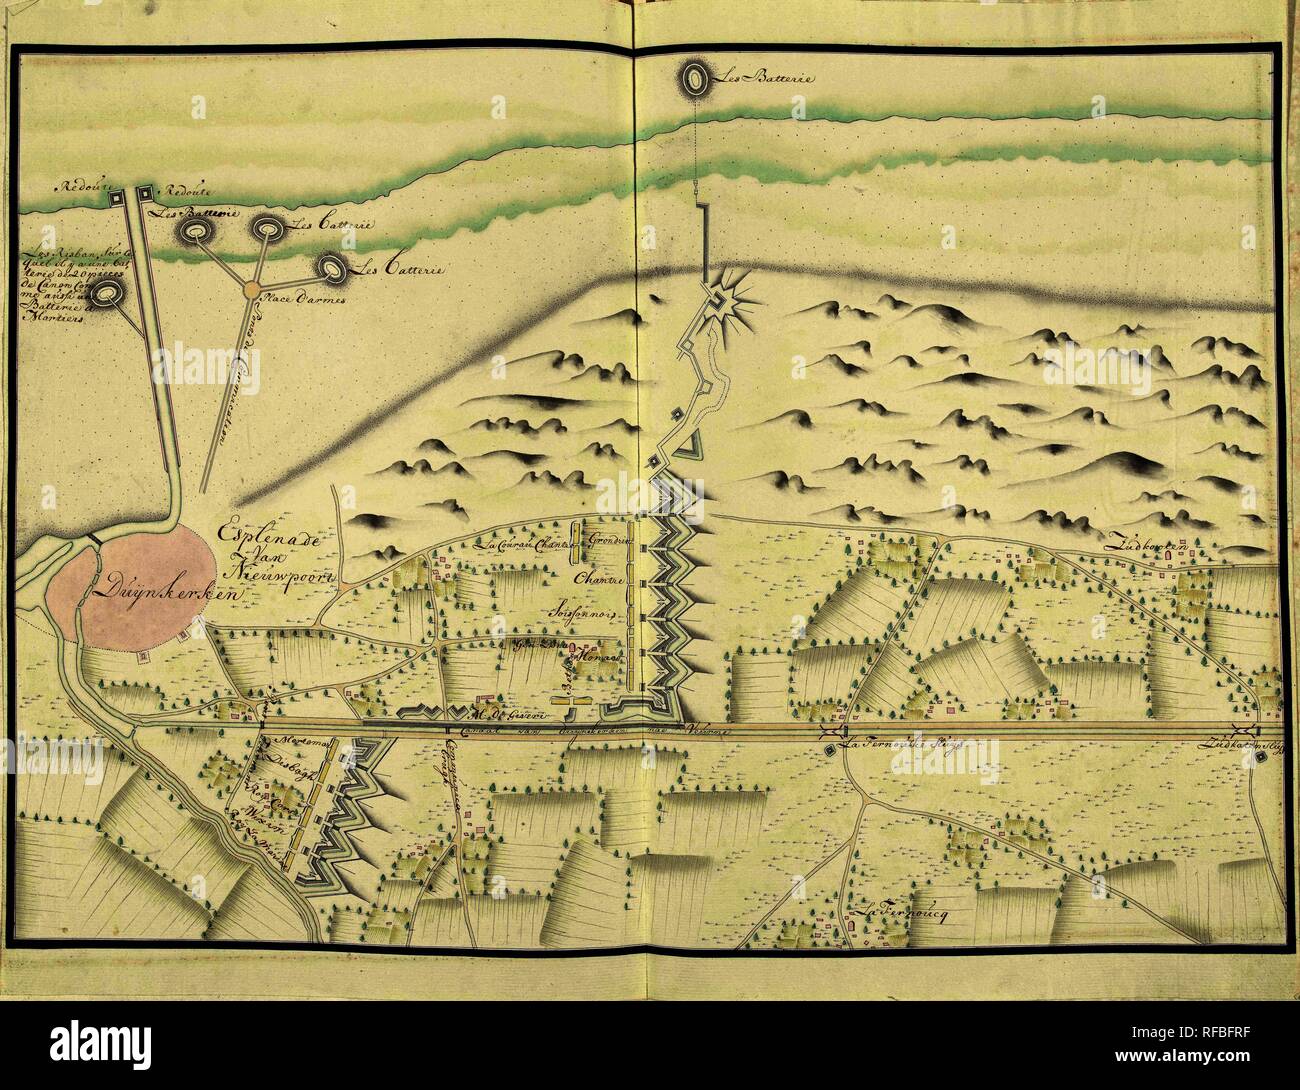 Seizoen Bekwaam Hoogte Plattegrond van de schansen ten noorden van Duinkerke, ca. 1701-1715. Plaan  van de stadt Oostende soo als de selve is belegerdt geworden door de Armée  van de Gealieerde op den 28 Juny